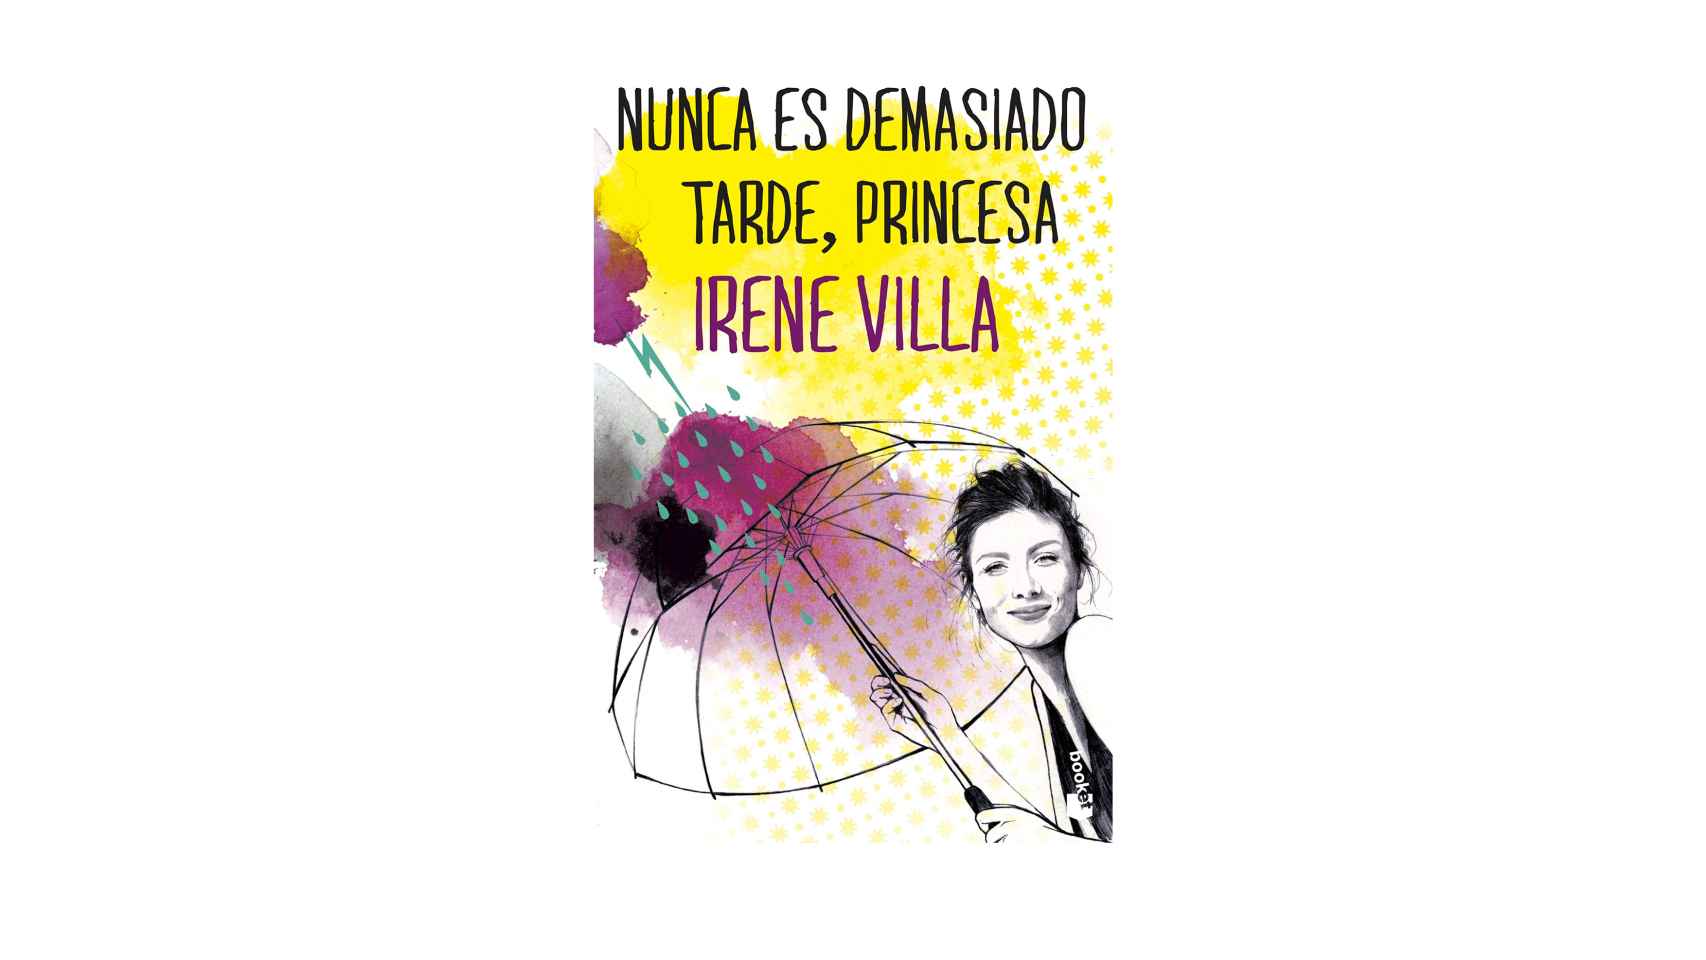 Nunca es demasiado tarde, princesa, Irene Villa